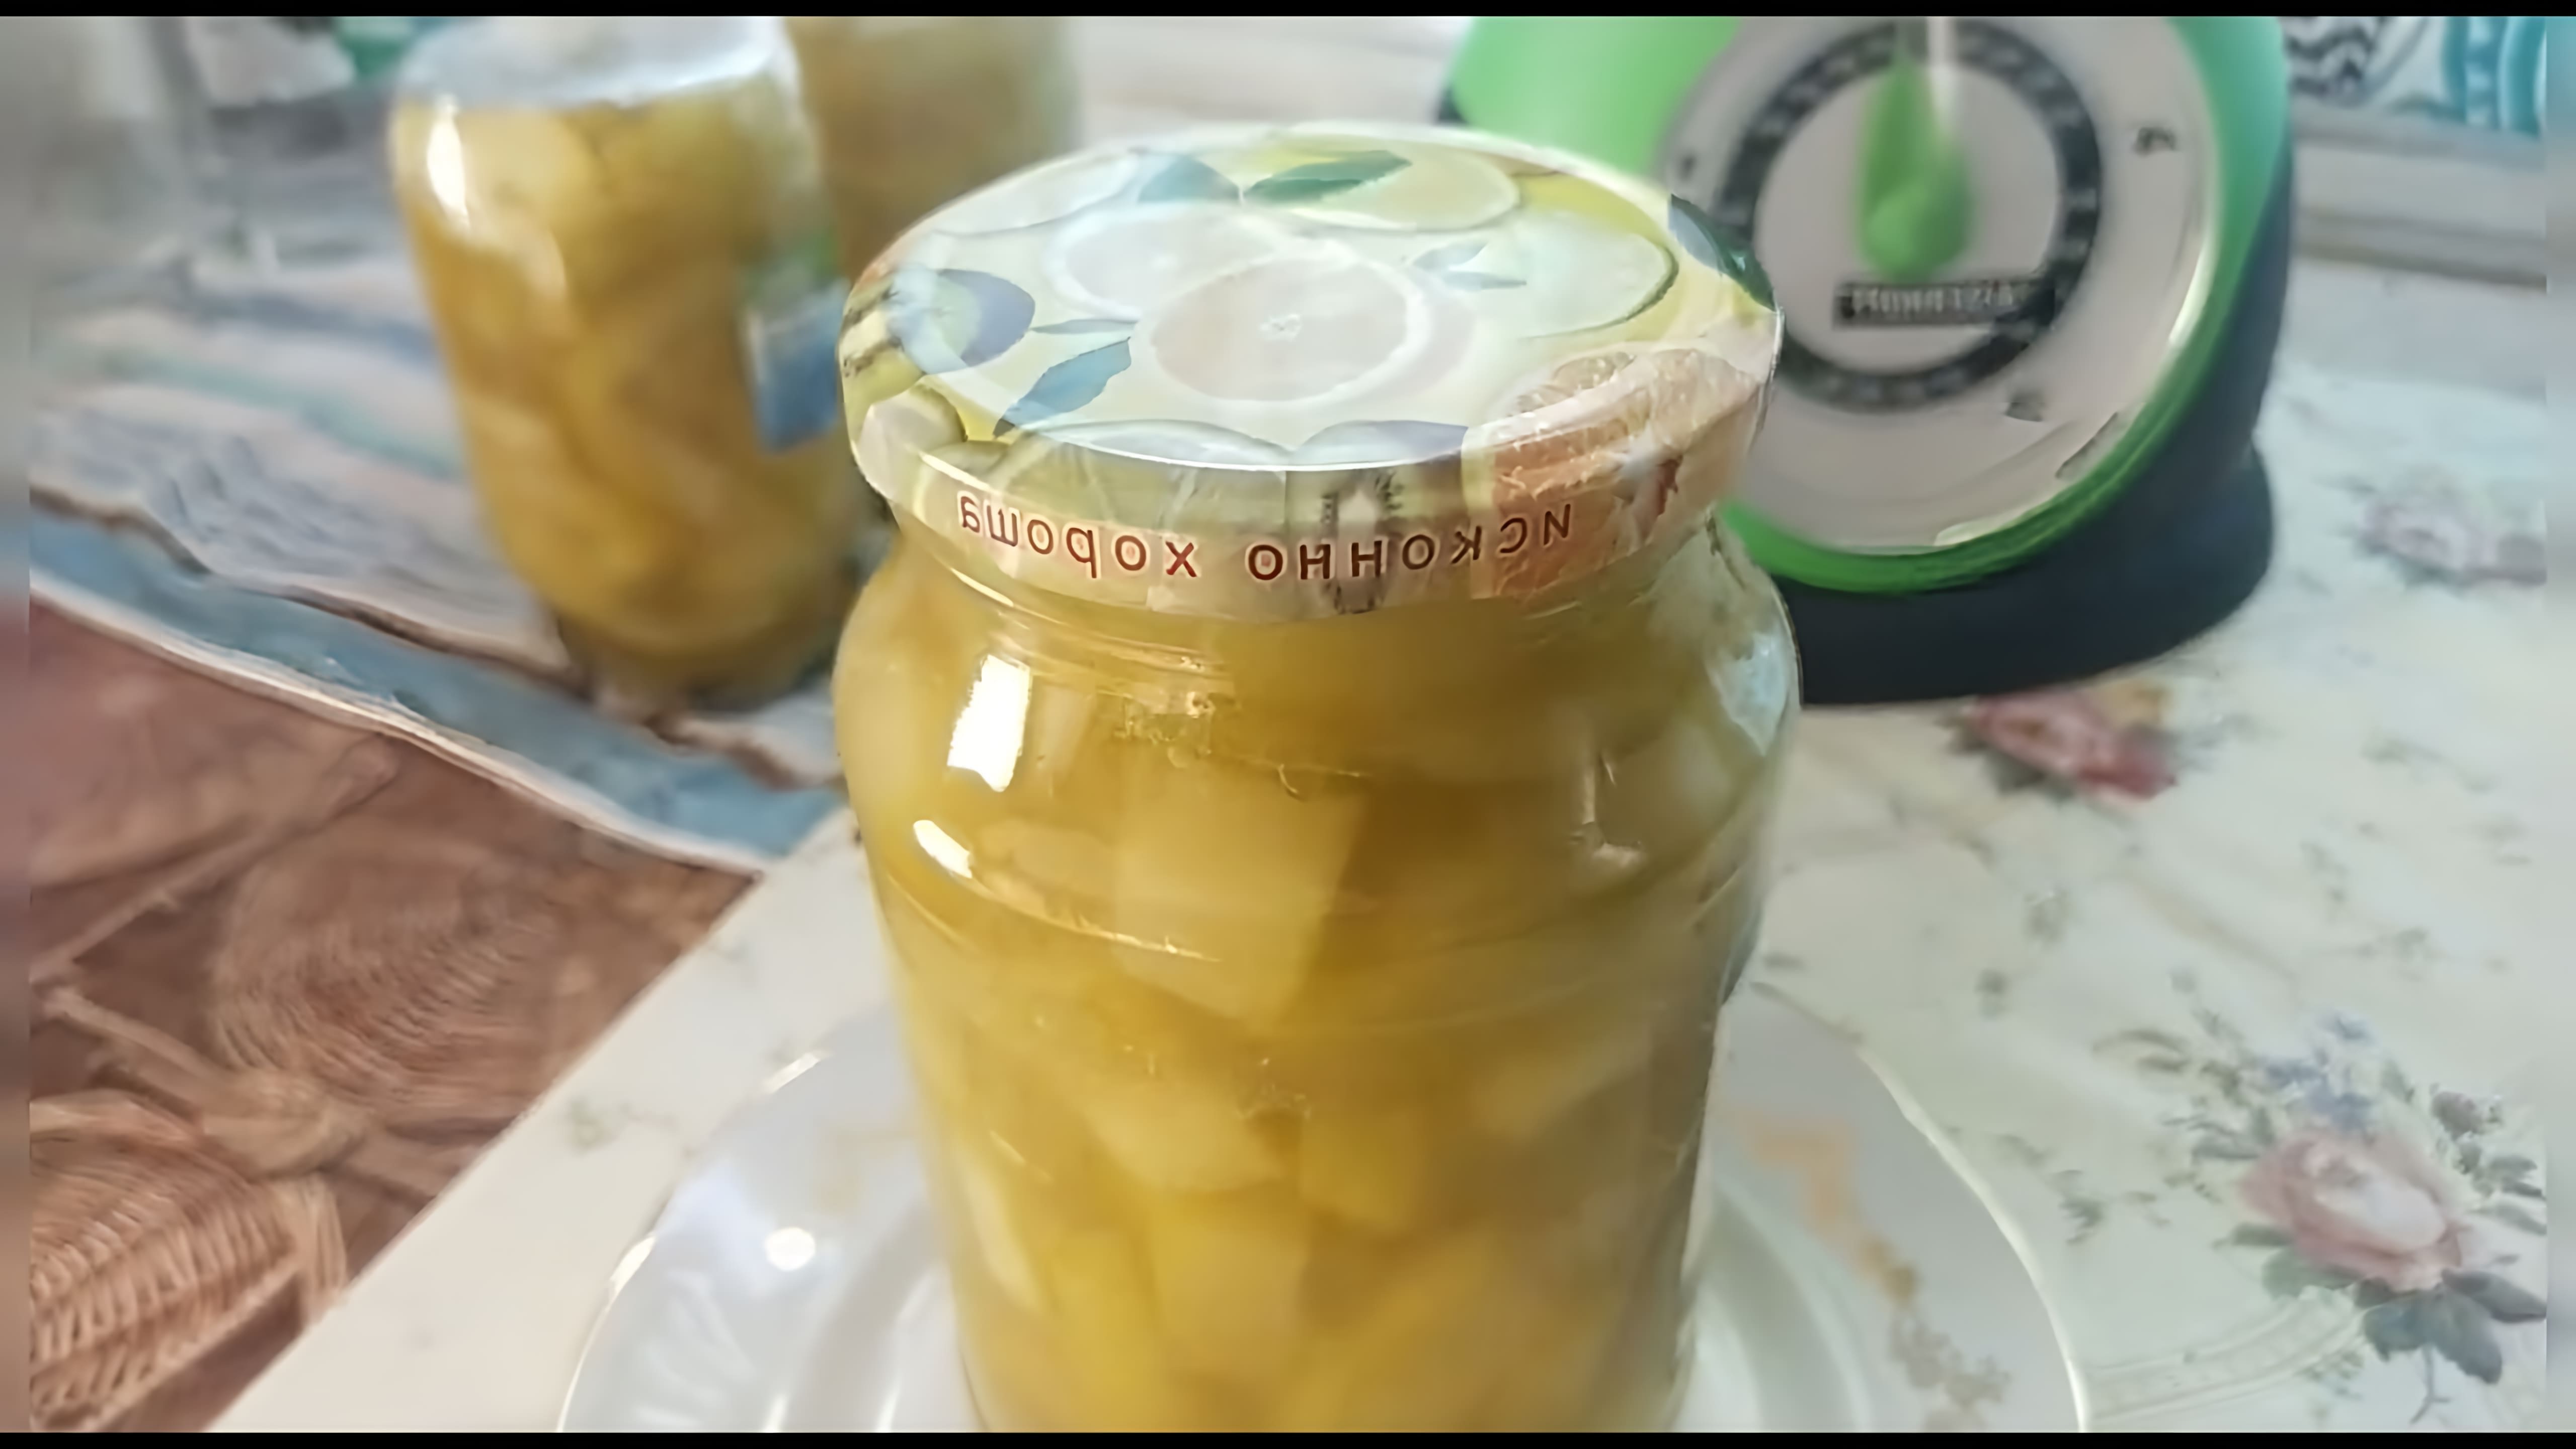 В этом видео демонстрируется рецепт приготовления кабачков, напоминающих по вкусу и внешнему виду дольки ананаса